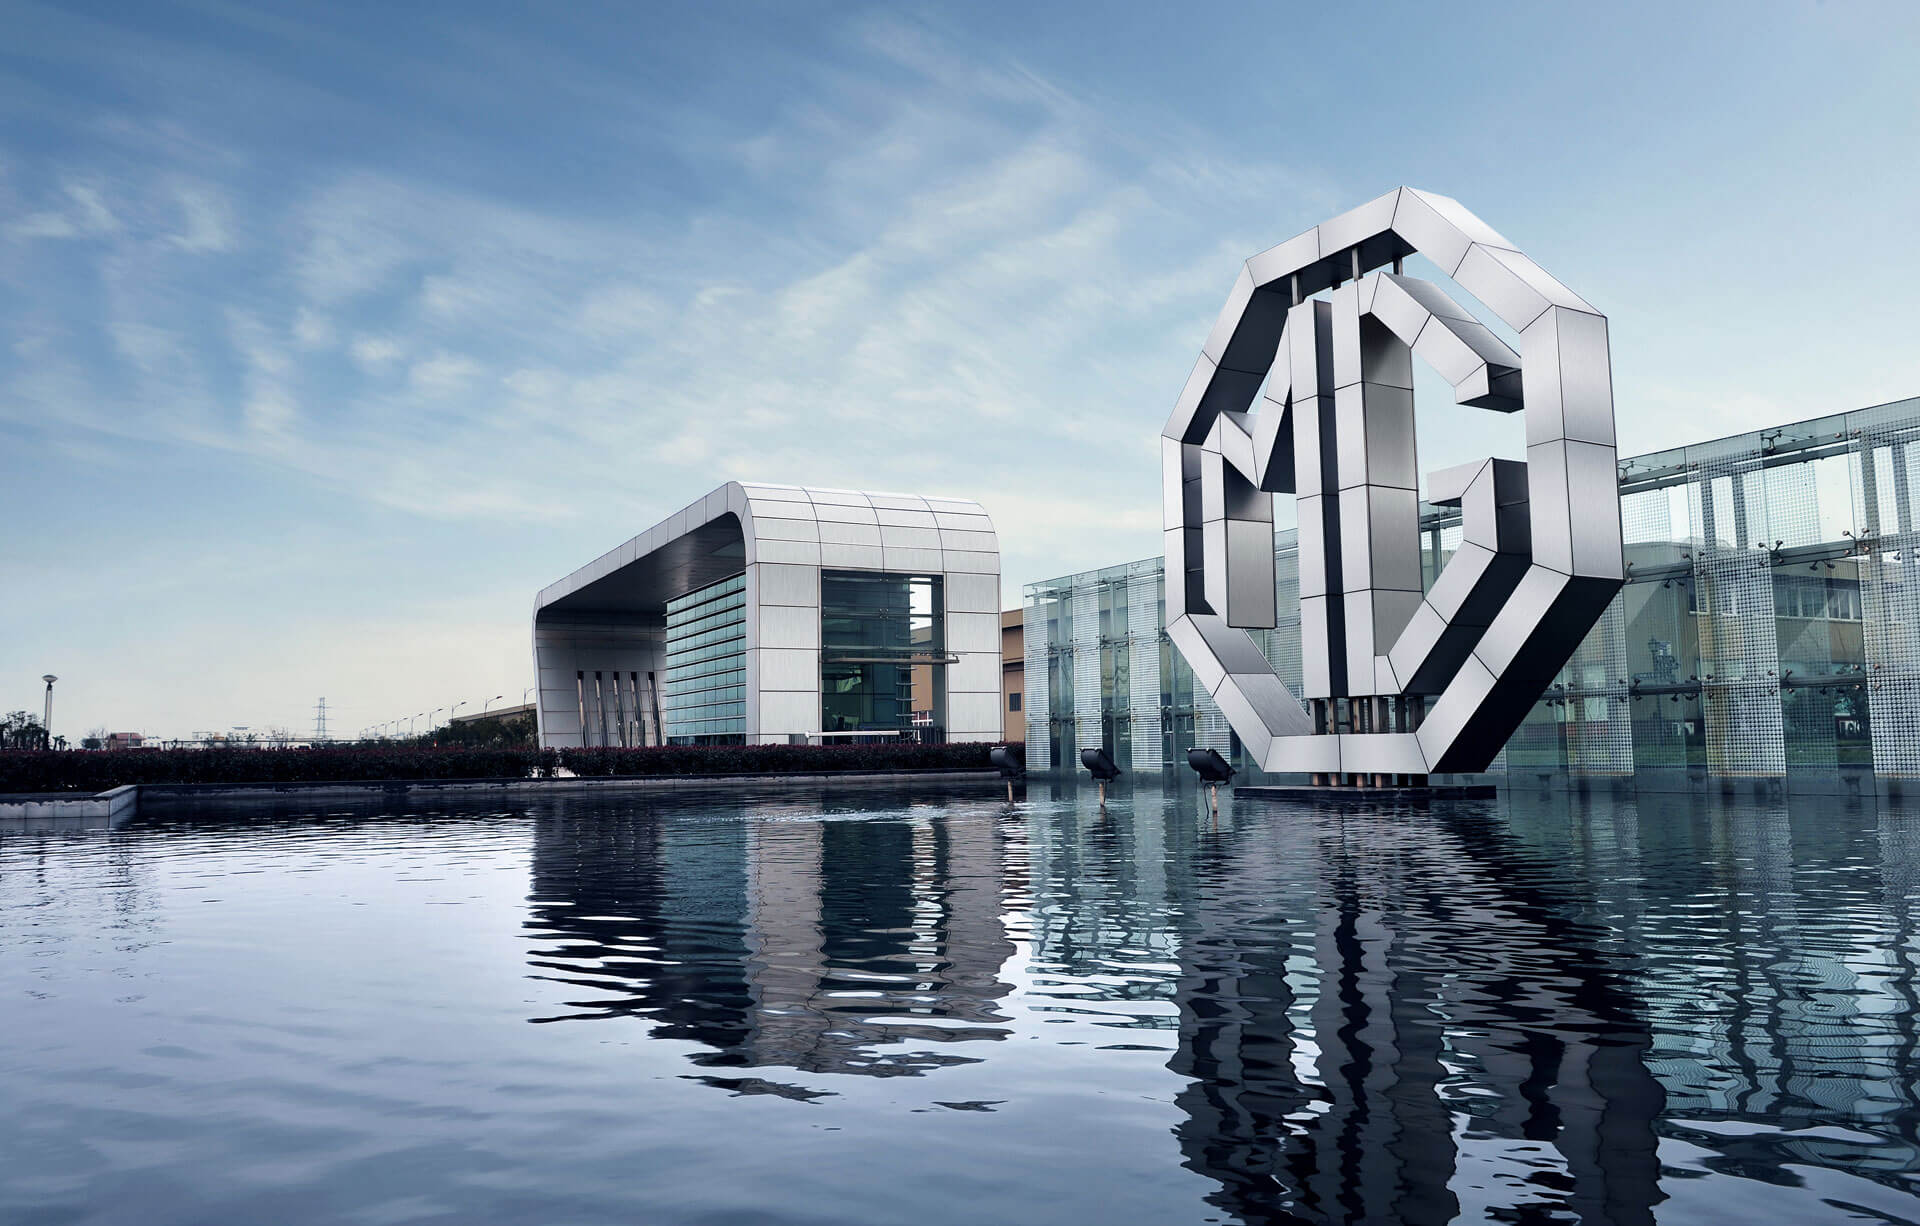 Sucursal MG, destaca por el logo gigante en laguna.